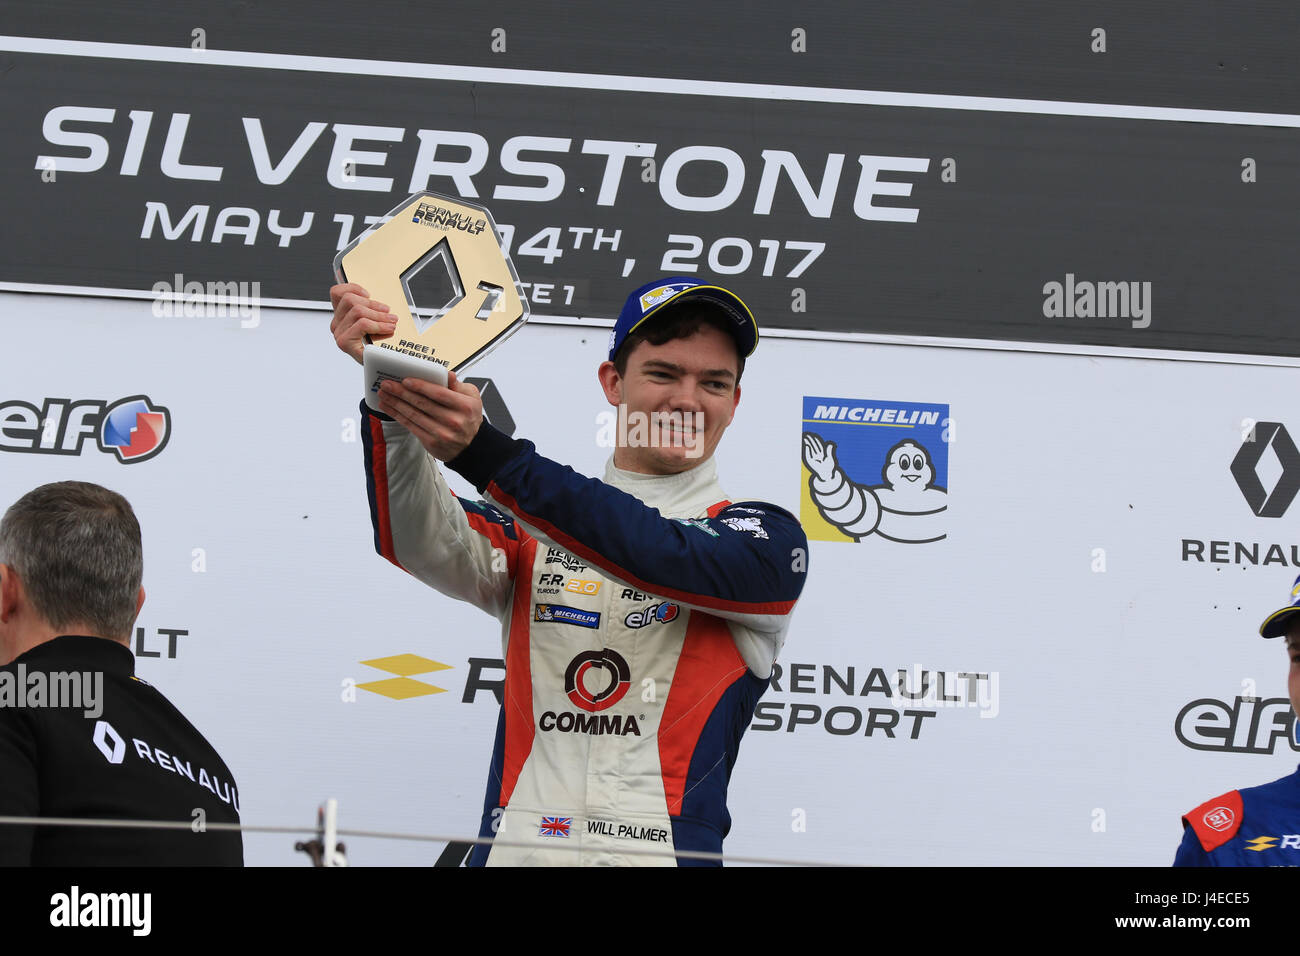 Silverstone, Regno Unito. 13 Maggio, 2017. Sarà Palmer di R-ace GP celebra la sua vittoria sul podio di credito parentesi: Raval/Alamy Live News Foto Stock